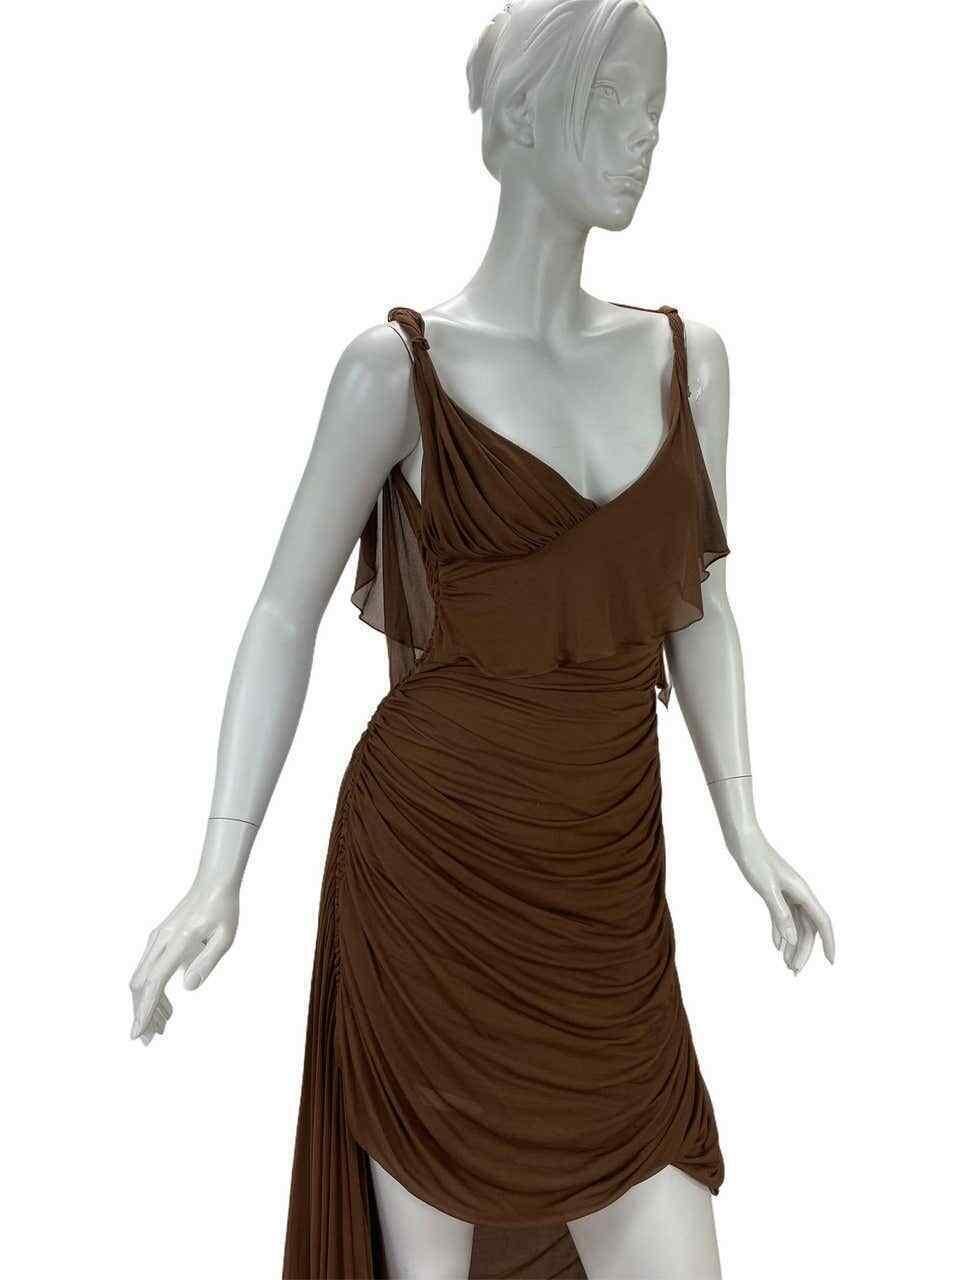 F/S 2003 Vintage Tom Ford für Gucci Griechische Göttin Seidenkleid, gesehen im Museum
Anmerkung der Redaktion:
Ein Kleid mit femininem Charme, das der Fantasie von Tom Ford entsprungen ist. Sie stammt exklusiv aus der Gucci-Herbstkollektion 2003 und